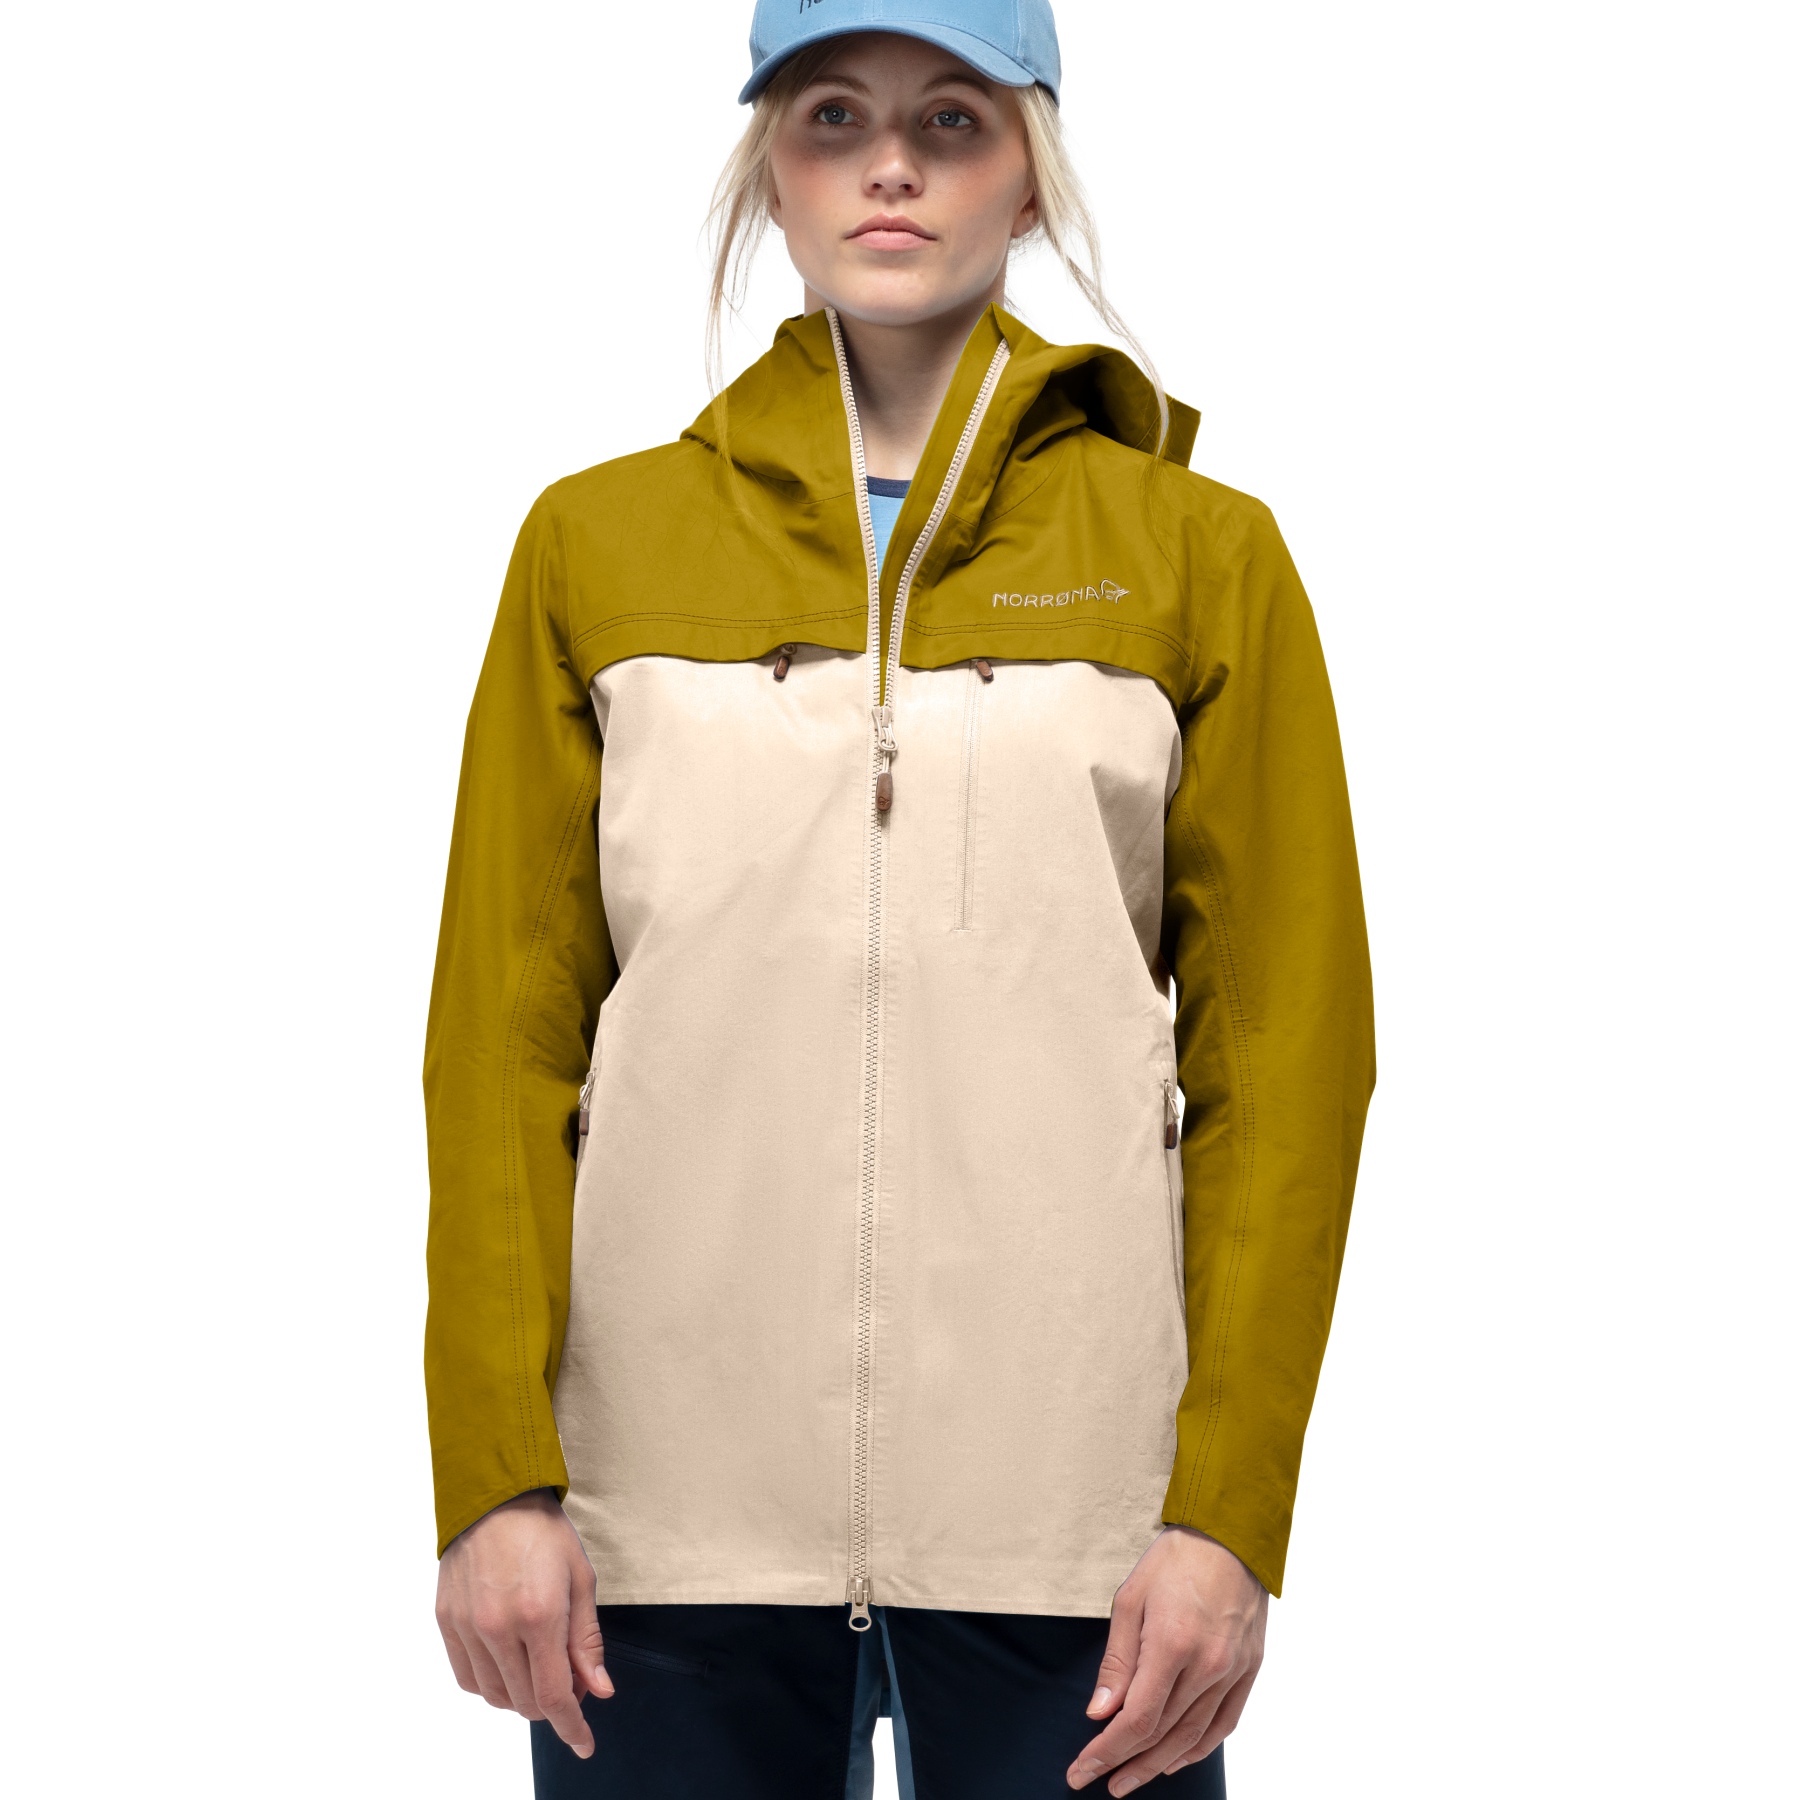 Produktbild von Norrona svalbard cotton Jacke Damen - Golden Palm/Ecru